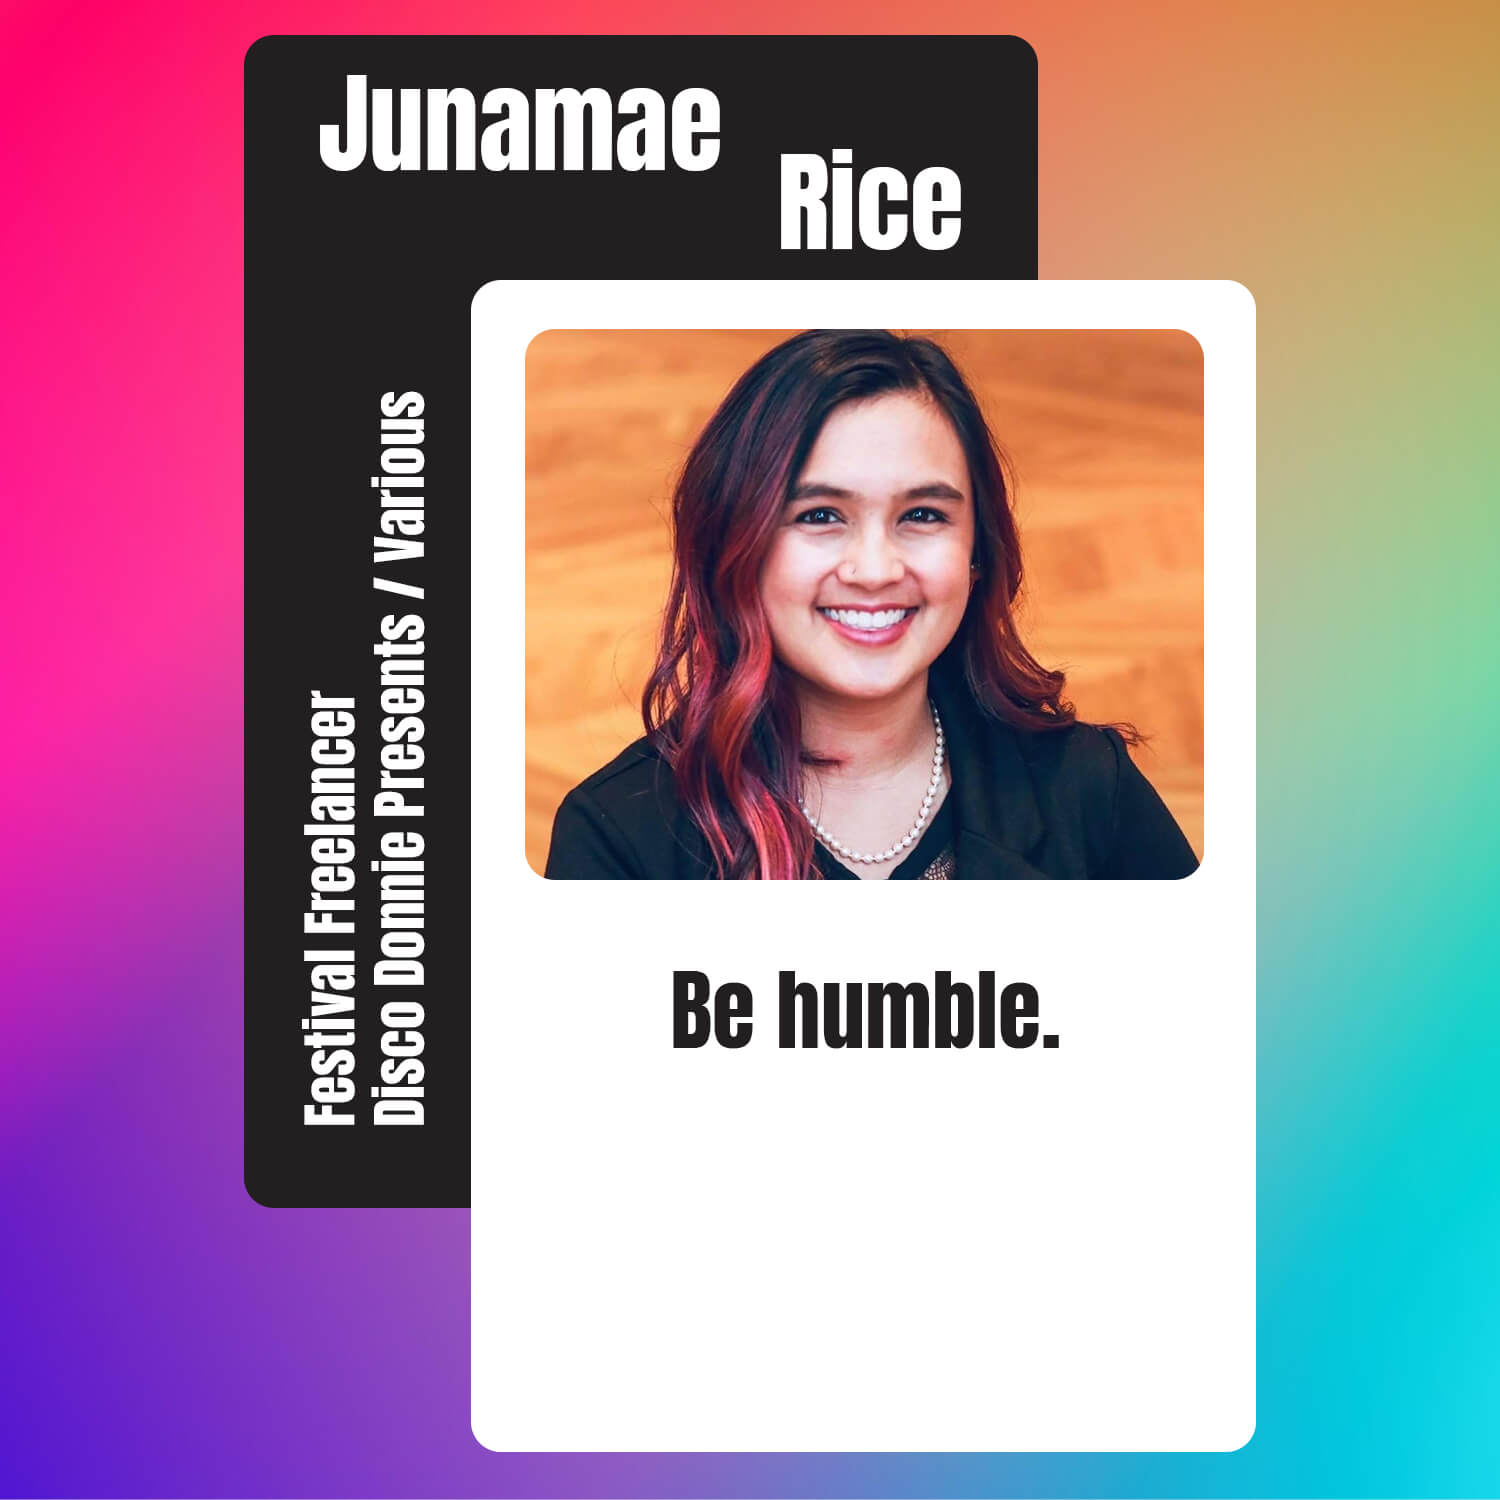 Junamae Rice